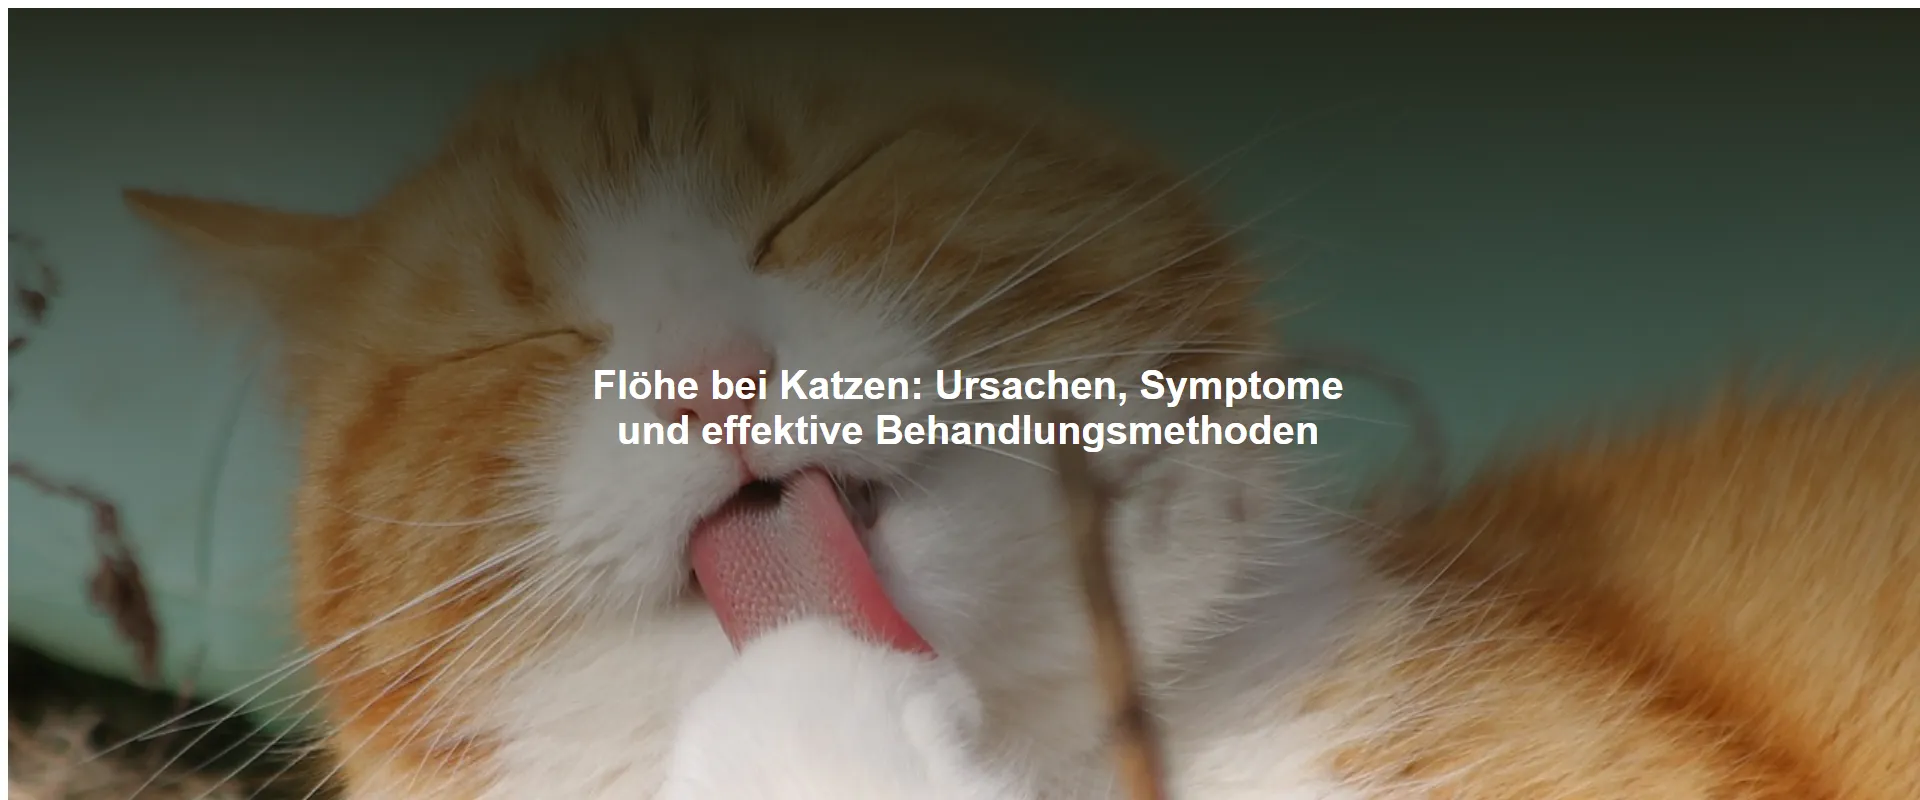 Flöhe bei Katzen – Ursachen, Symptome und effektive Behandlungsmethoden